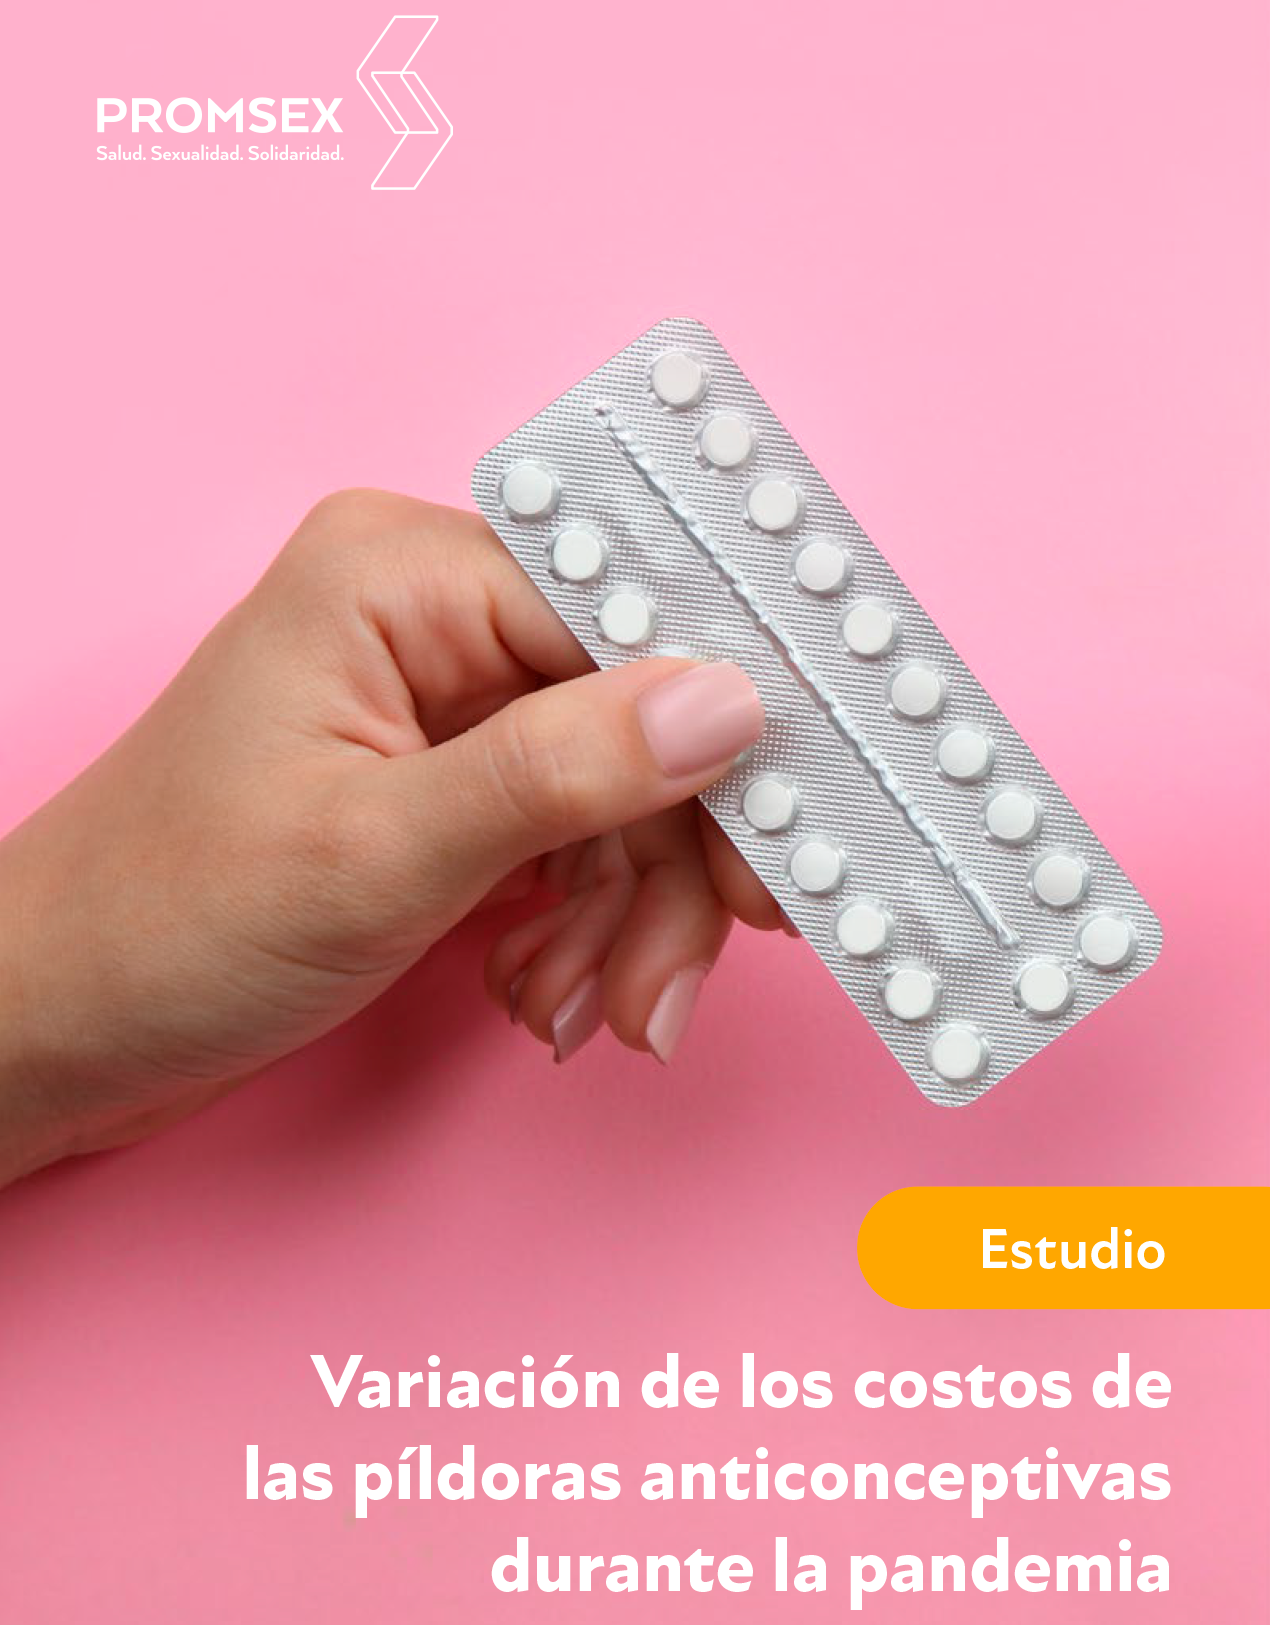 Imagen de píldoras anticonceptivas